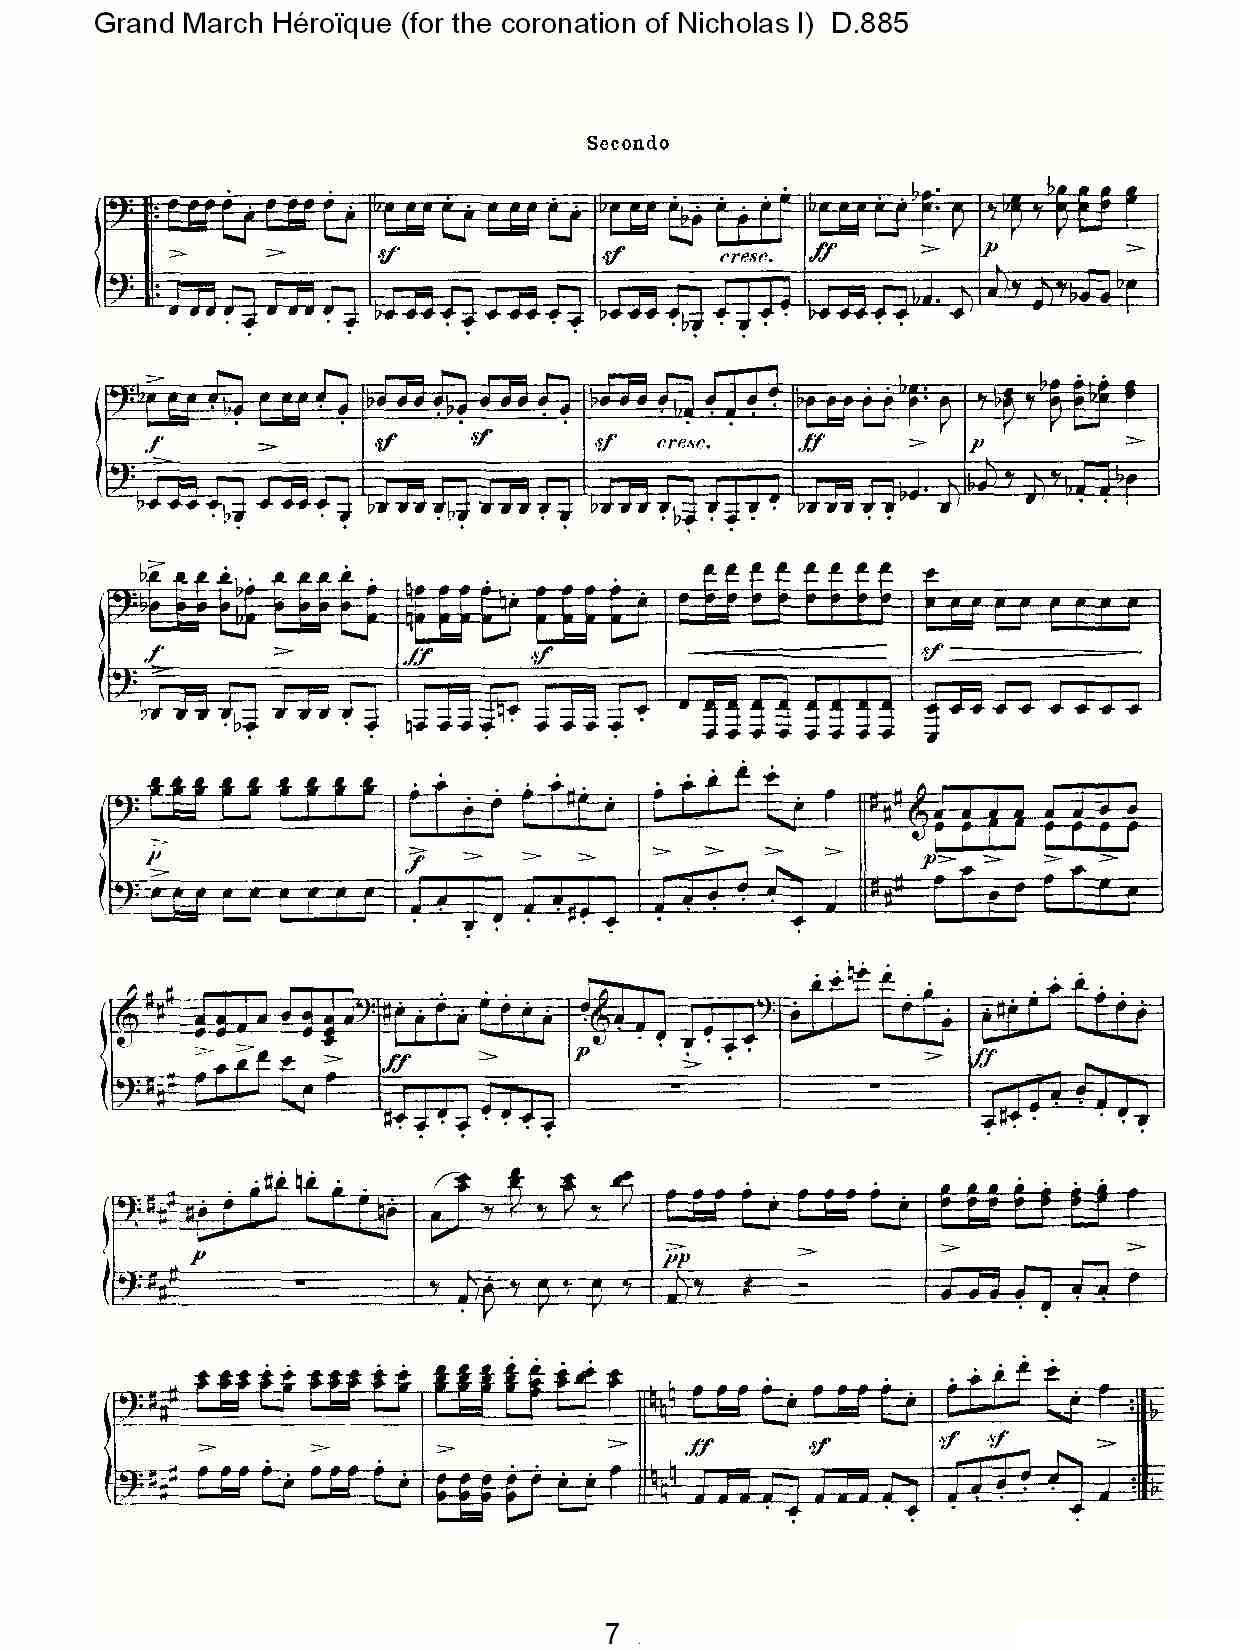 豪华进行曲（为尼古拉斯一世加冕礼而作)D.88）钢琴曲谱（图7）